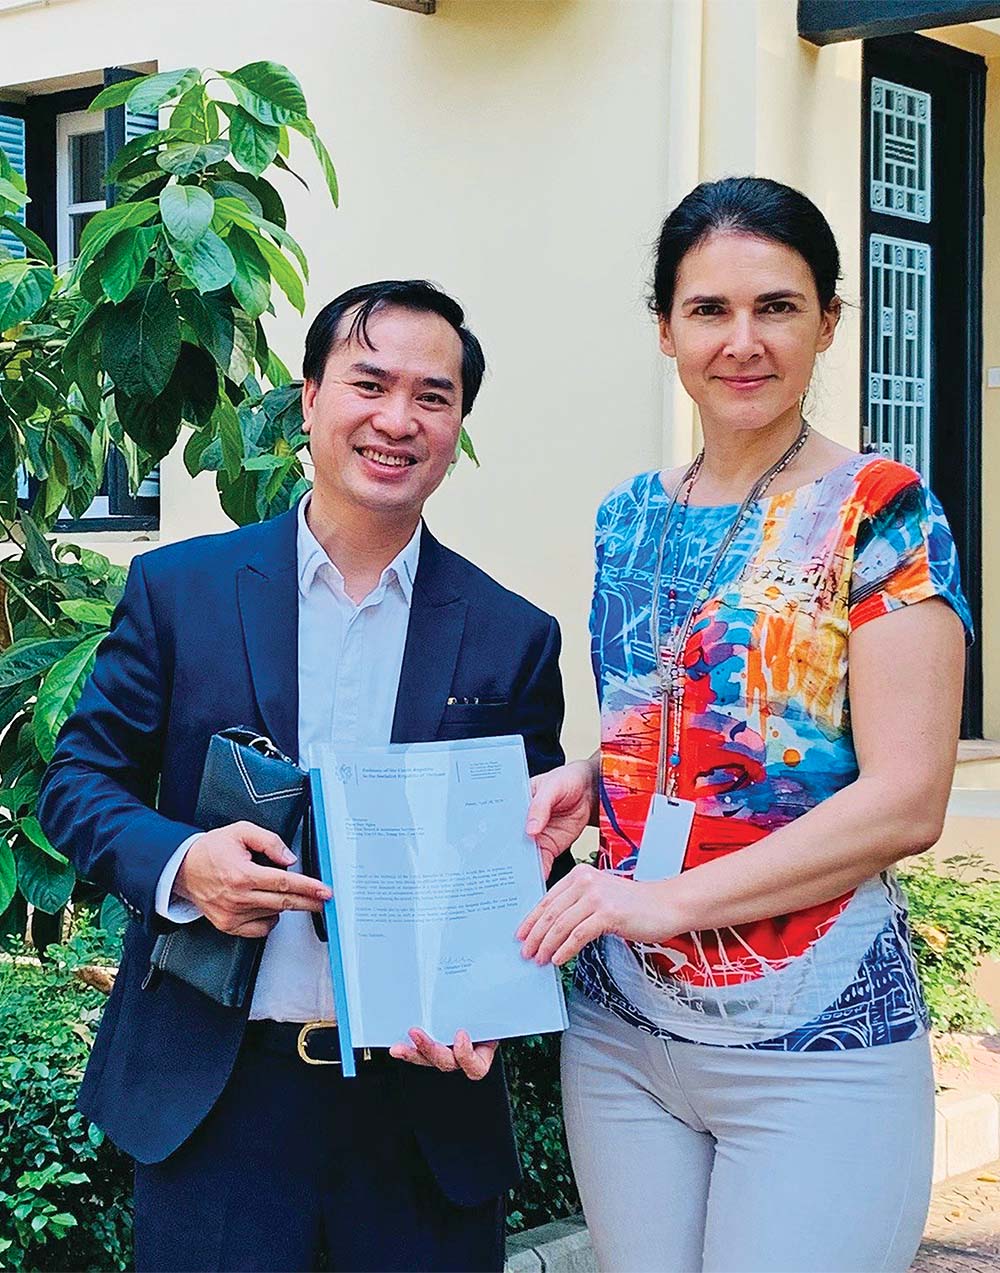 Ông Phạm Duy Nghĩa nhận quyền ký bảo lãnh visa duy nhất ở Việt Nam từ Trưởng phòng Lãnh sự, Đại sứ quán Cộng hòa Séc